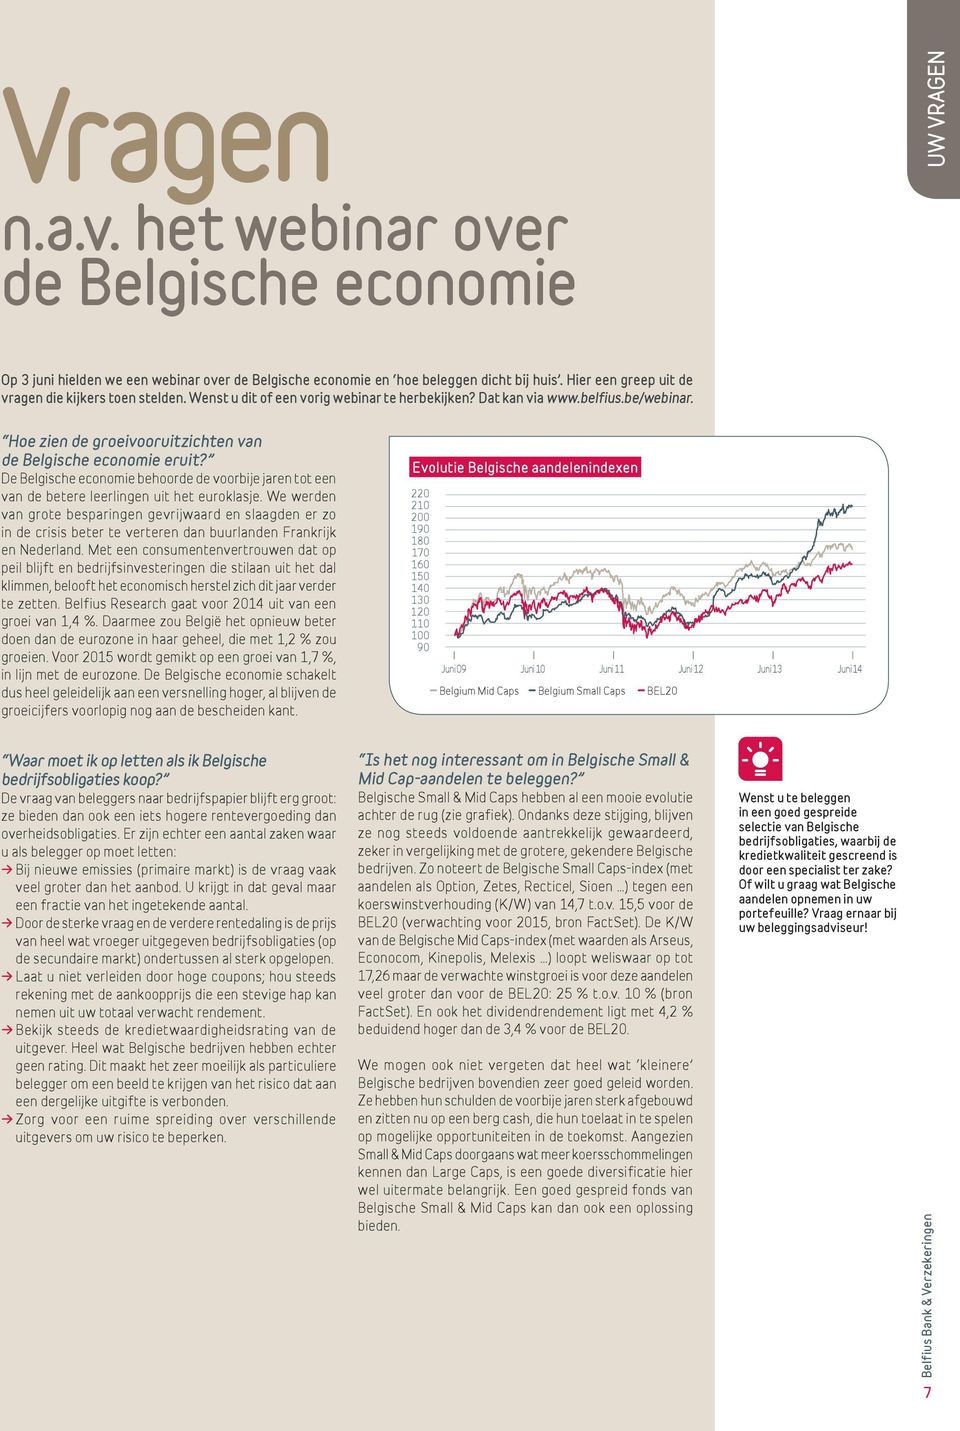 Hoe zien de groeivooruitzichten van de Belgische economie eruit? De Belgische economie behoorde de voorbije jaren tot een van de betere leerlingen uit het euroklasje.